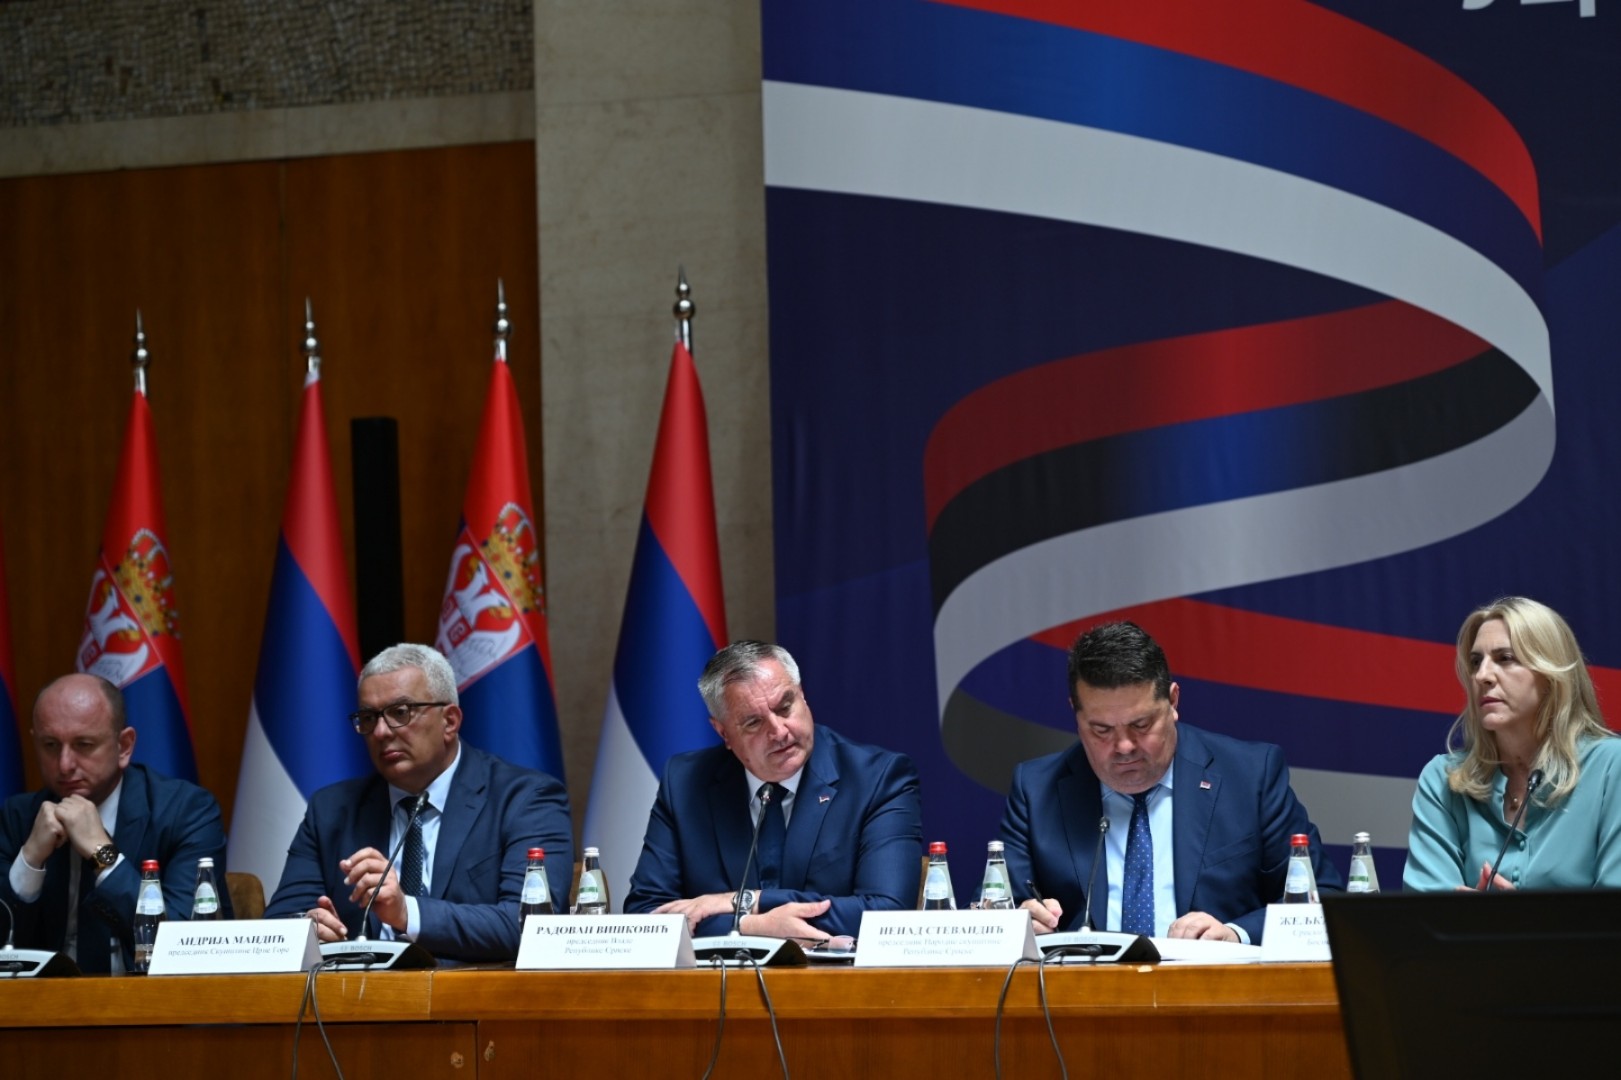 'Prvi put srpski narod, bez ambicija da nanosi bilo kome štetu, želi da kreira budućnost'